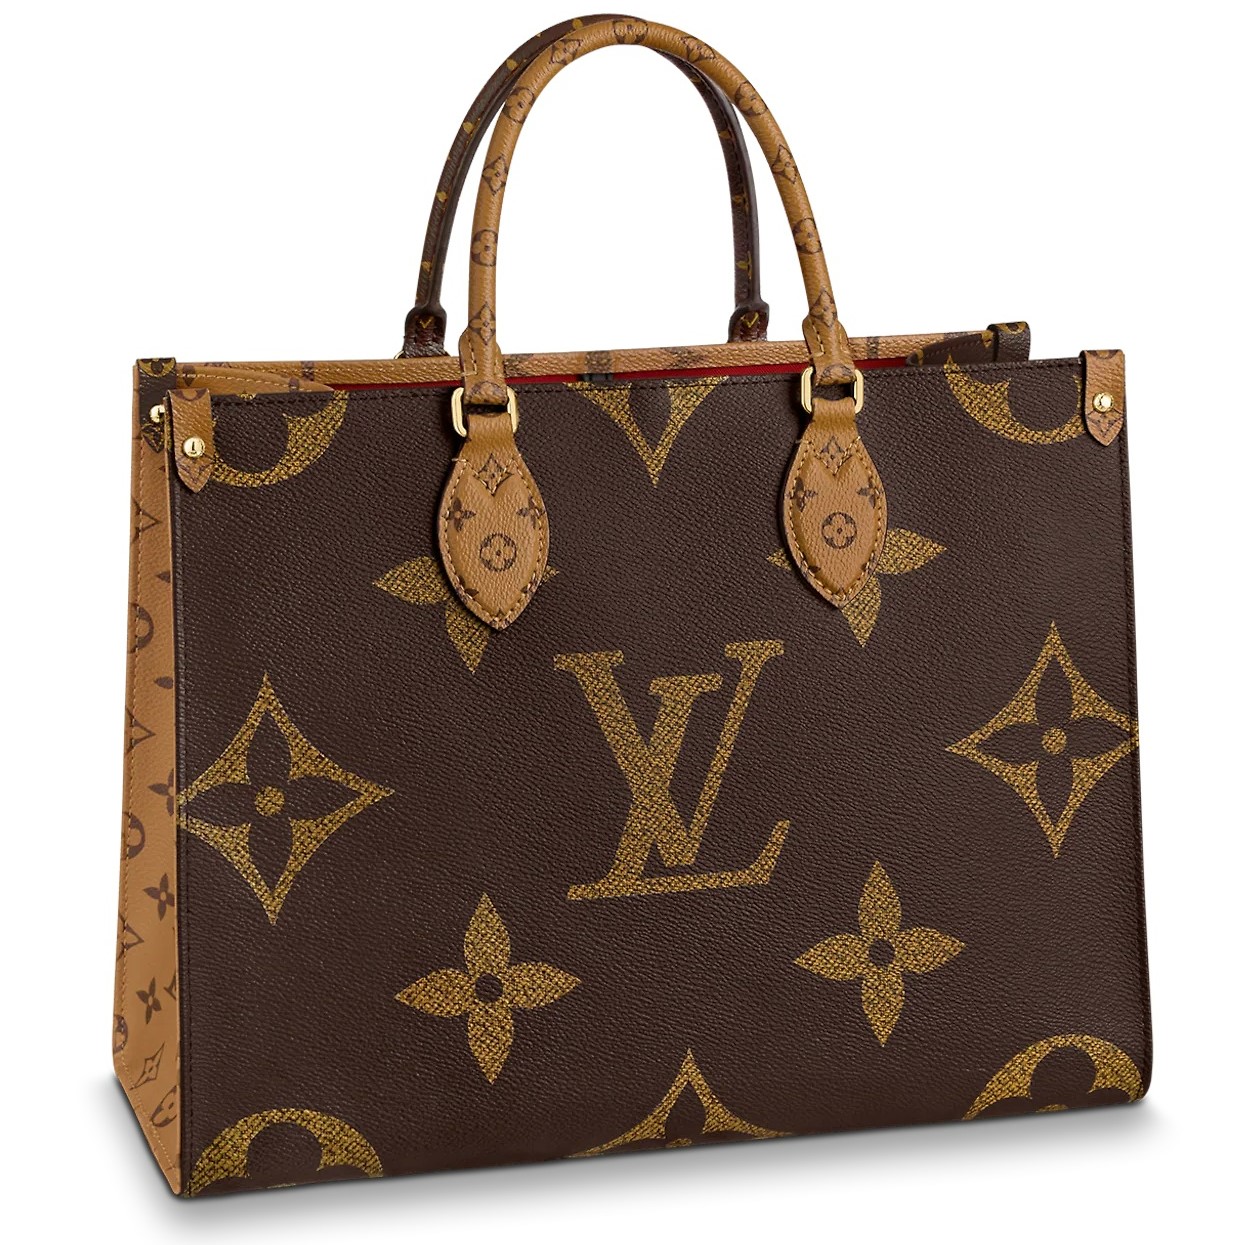 Túi xách LV Louis Vuitton cao cấp bán chạy Cập nhật tháng 7